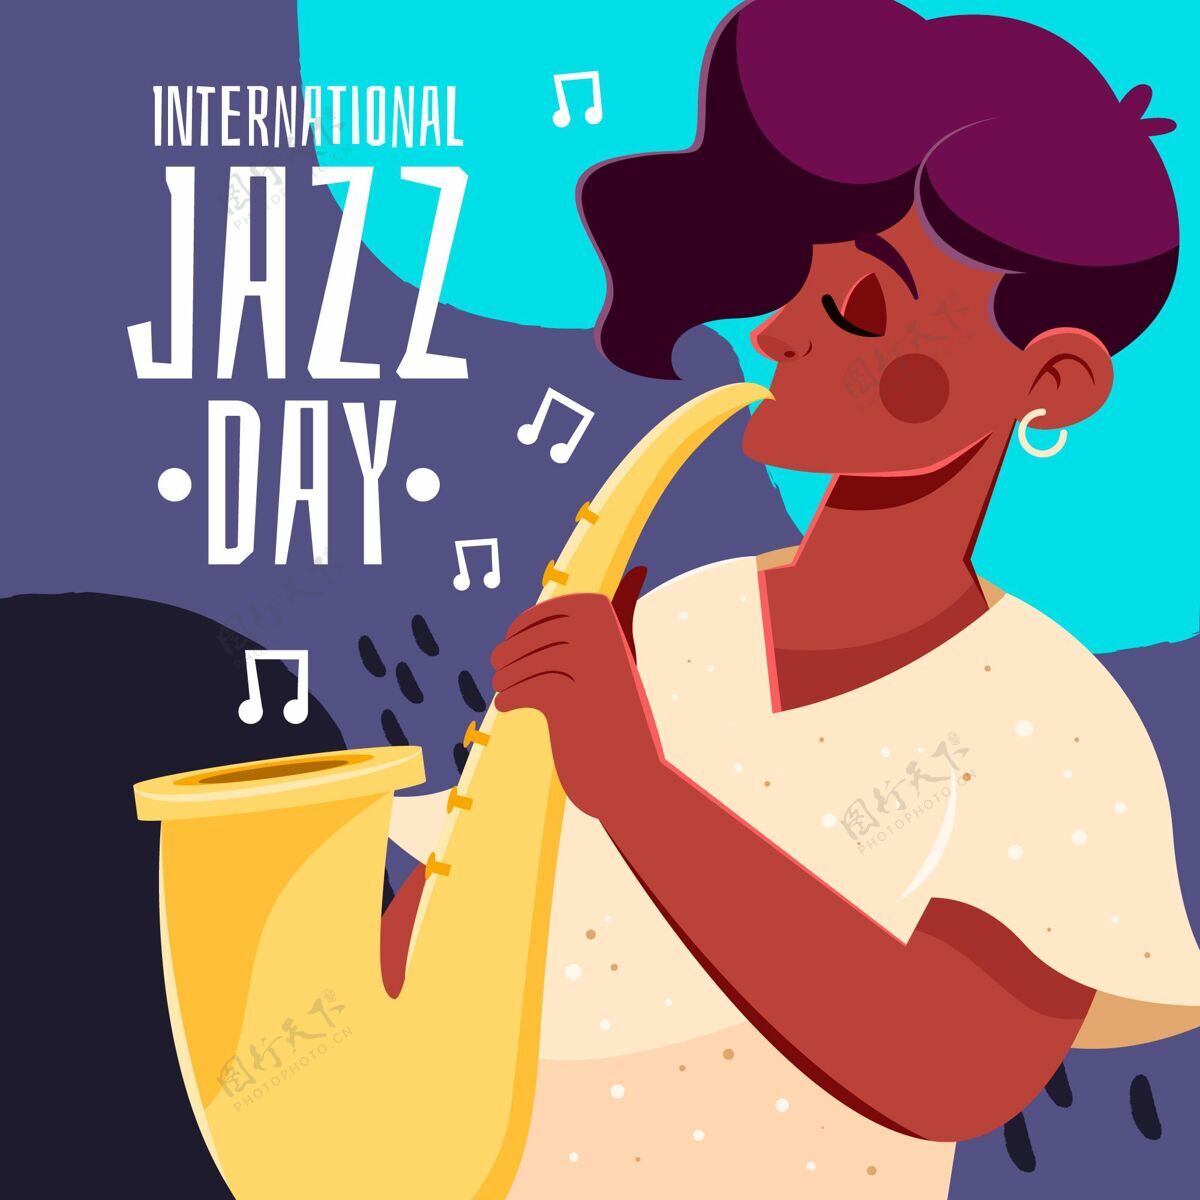 国际爵士乐日手绘国际爵士日插画爵士乐日爵士乐音乐会音乐